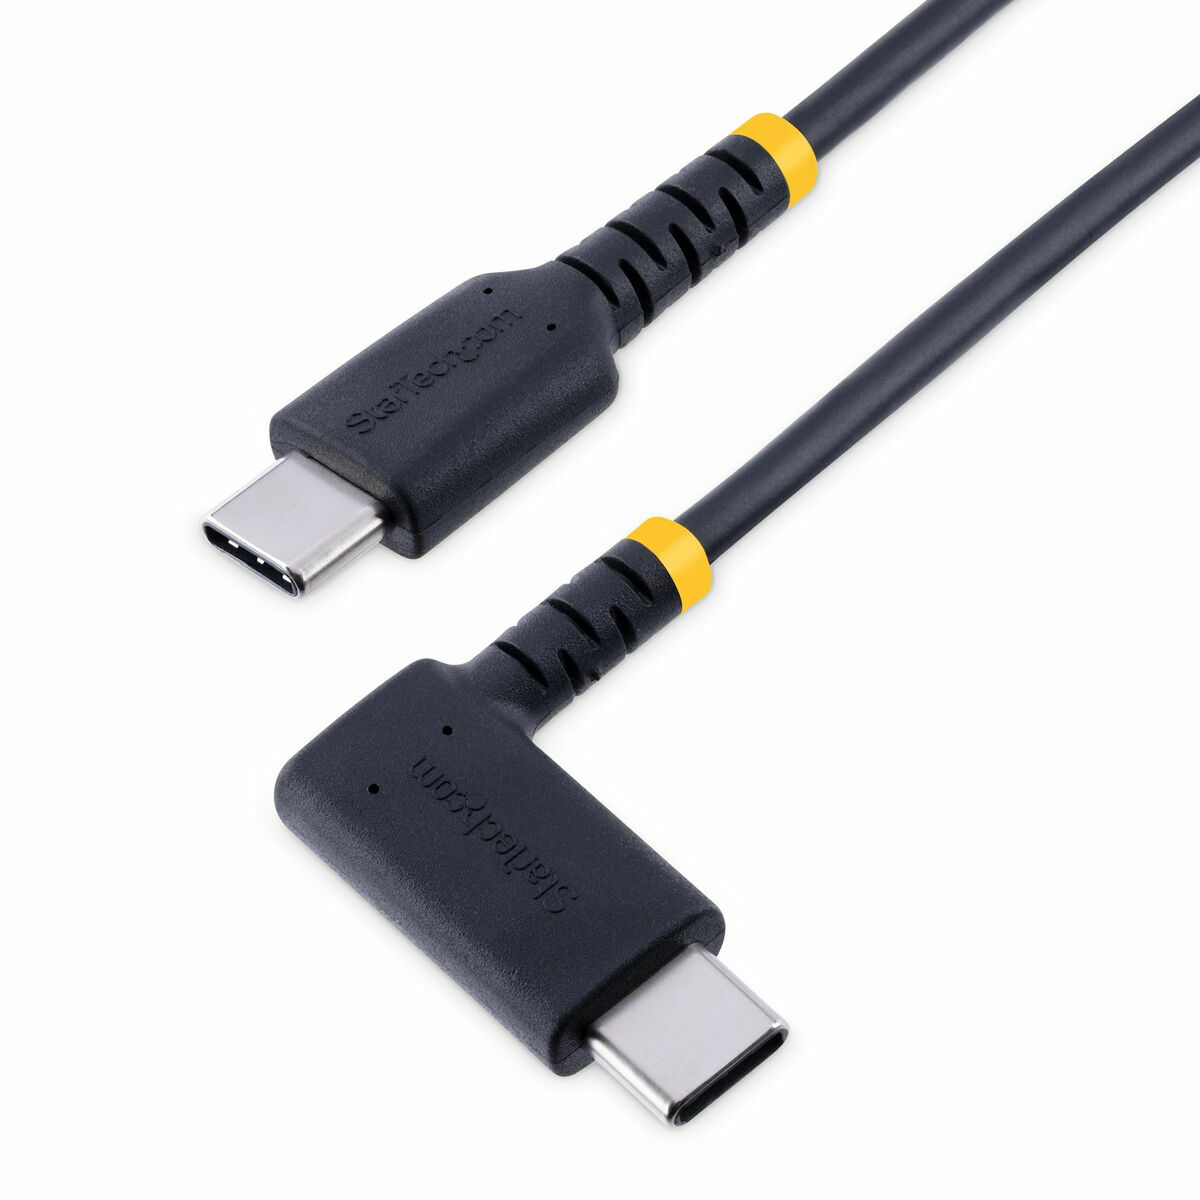 Osta tuote Kaapeli Micro USB Startech R2CCR-30C-USB-CABLE Musta verkkokaupastamme Korhone: Urheilu & Vapaa-aika 10% alennuksella koodilla KORHONE